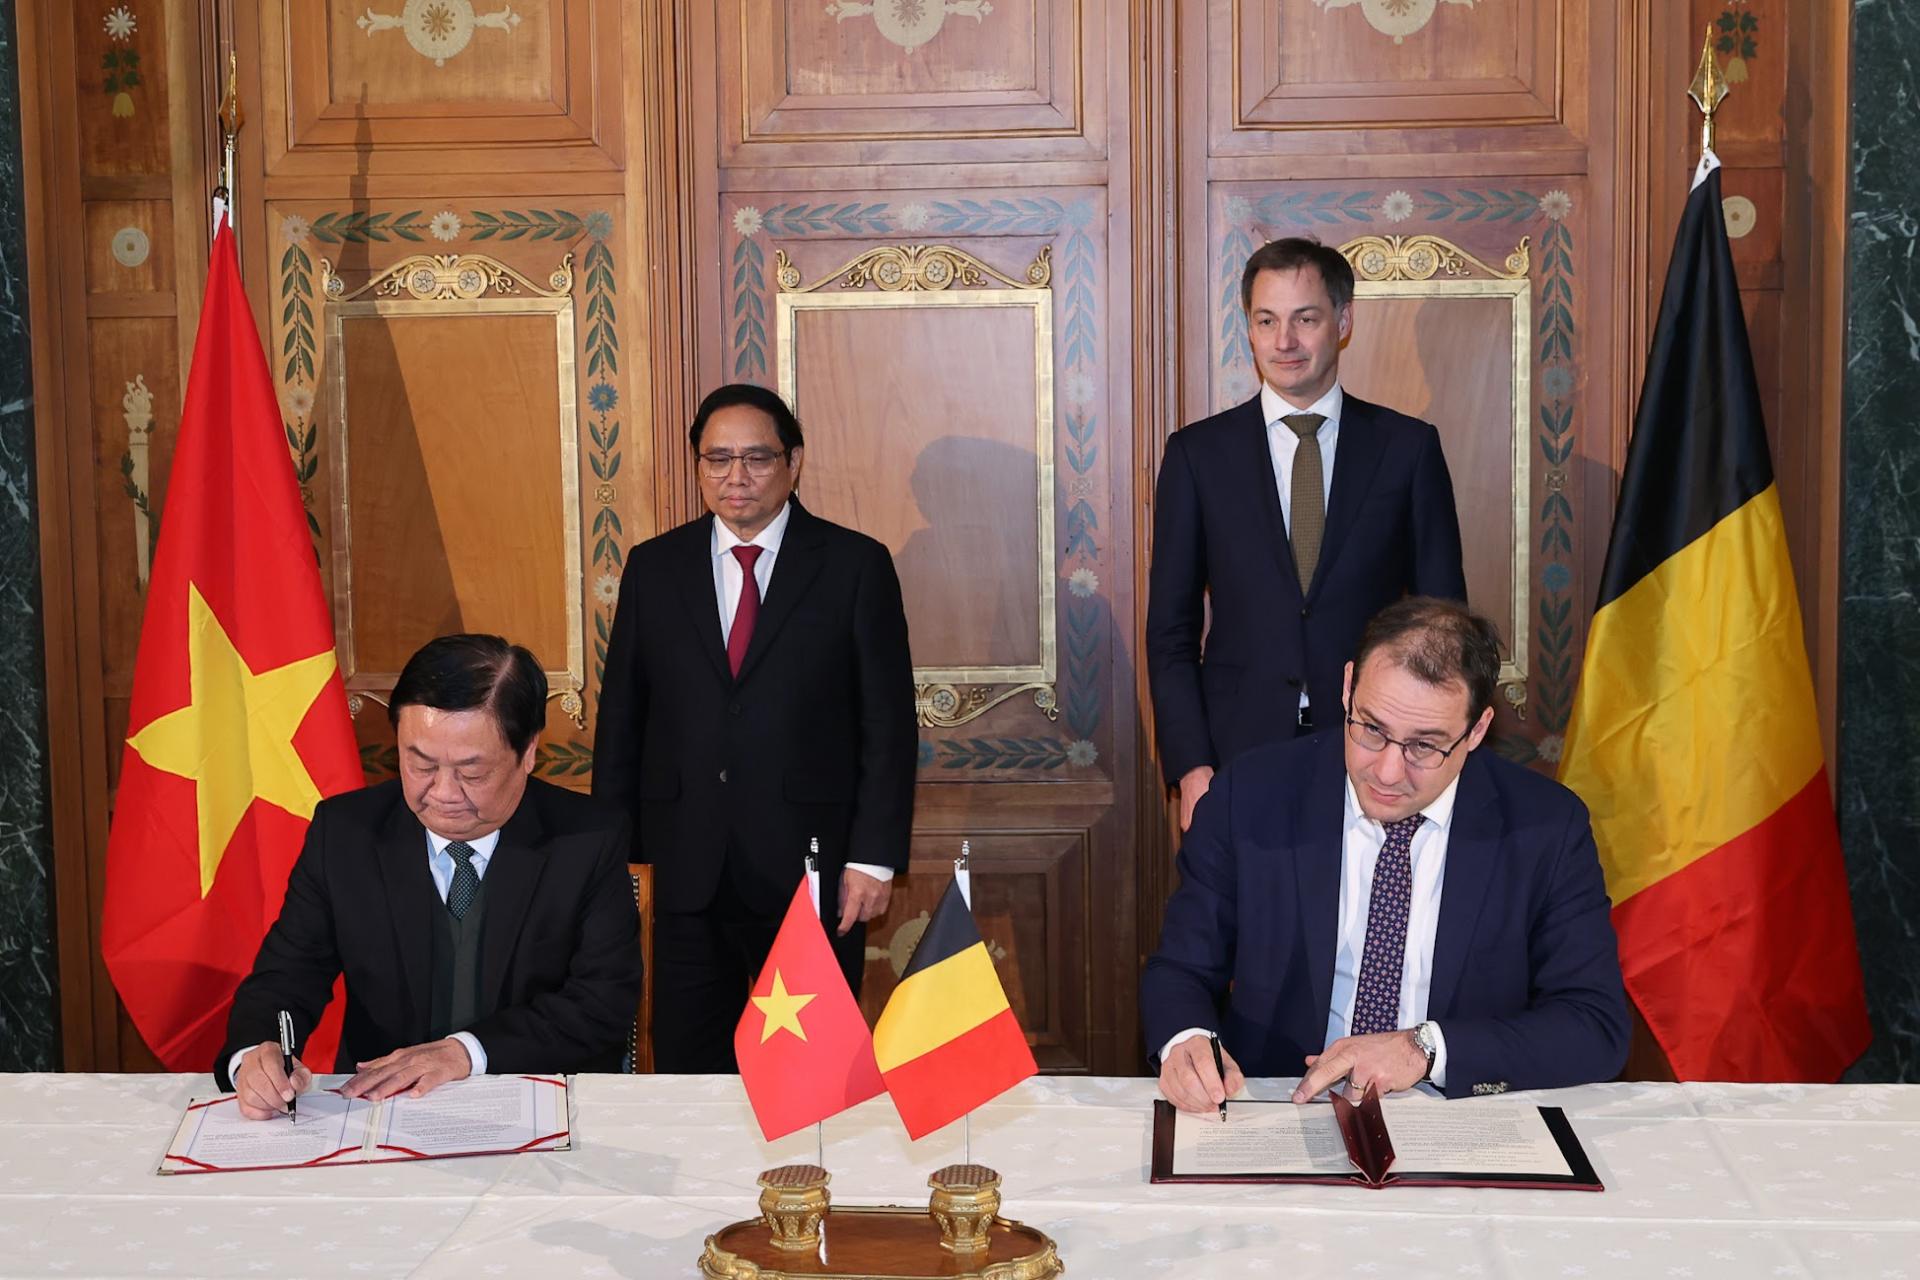 Thủ tướng Phạm Minh Chính và Thủ tướng Alexander De Croo chứng kiến ký kết gia hạn bản ghi nhớ (MOU) về chất lượng, an toàn nông sản, thú y và bảo vệ thực vật giữa Bộ NN&PTNT Việt Nam và Bộ Nông nghiệp Bỉ.